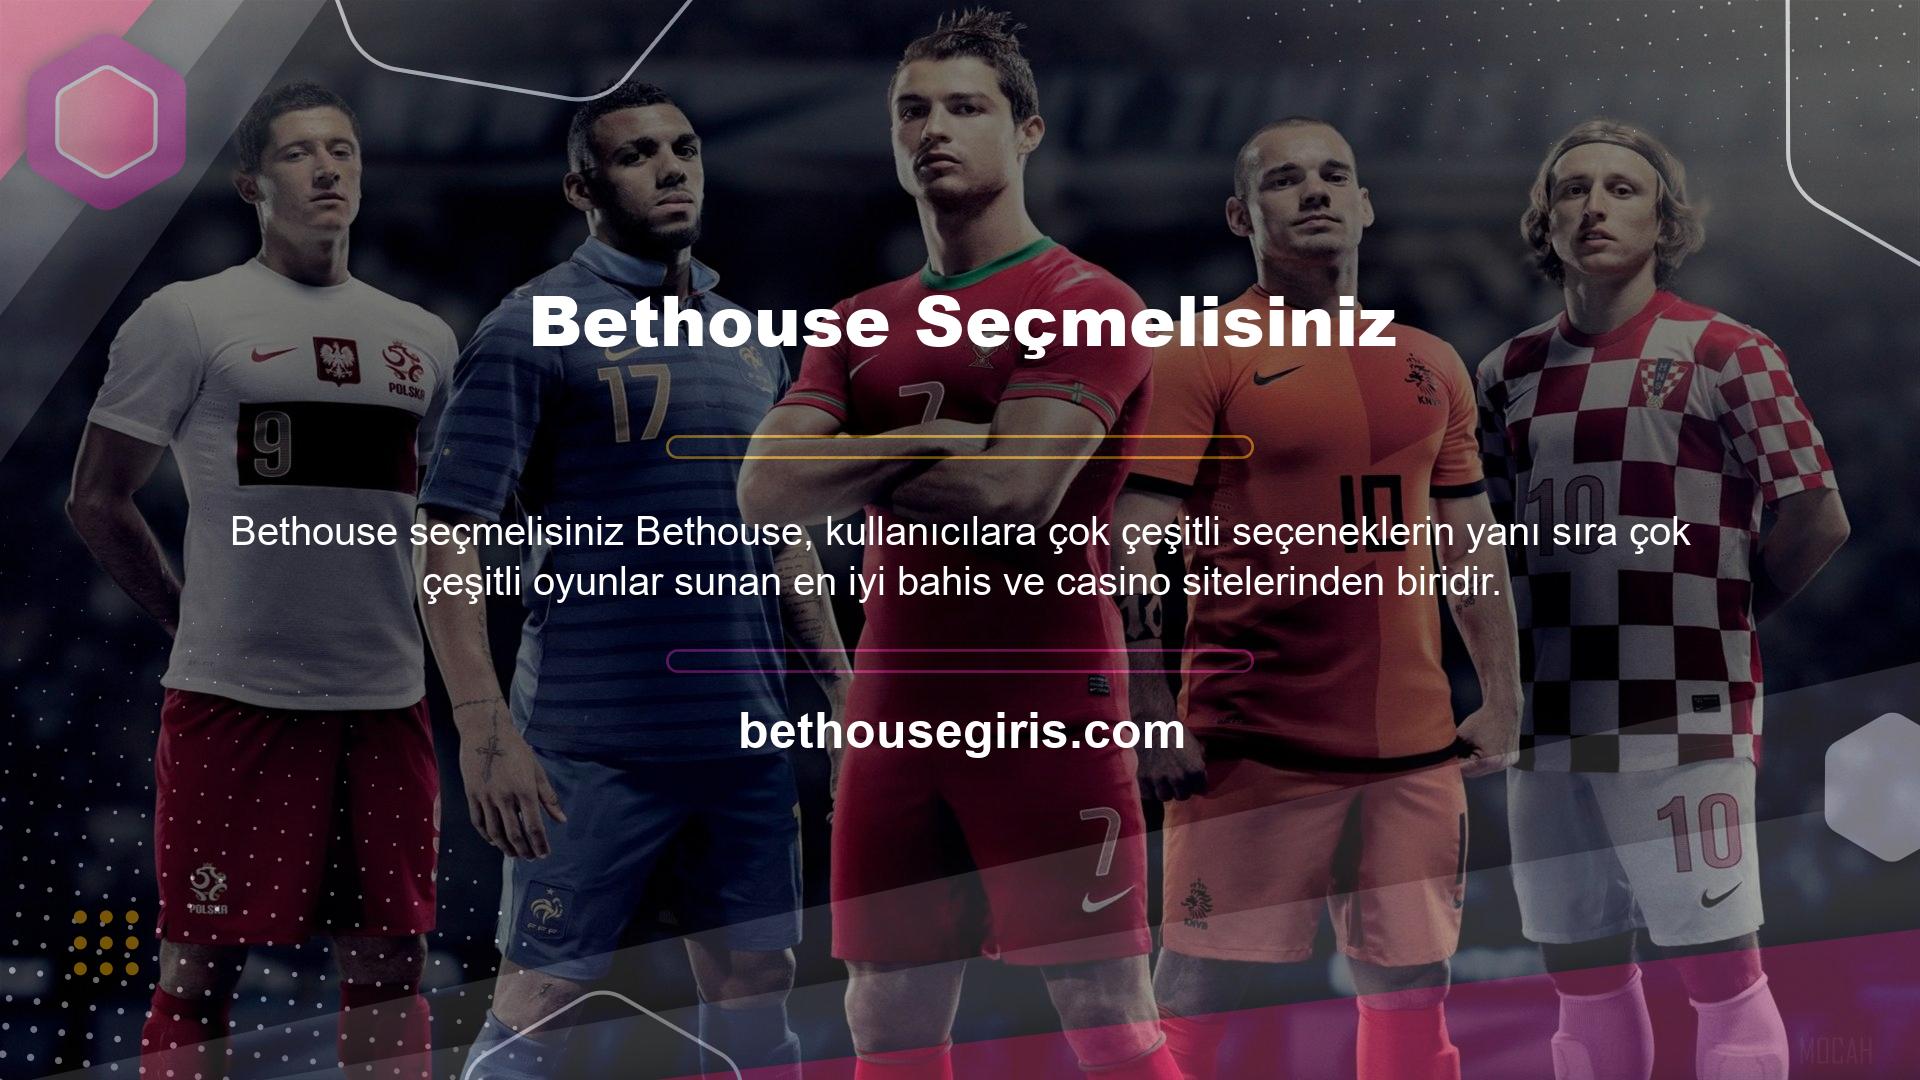 Sizi zafere bir adım daha yaklaştırmaya çalışan Bethouse web sitesinin size sunacak çok şeyi olduğunu söylemekle yetinelim